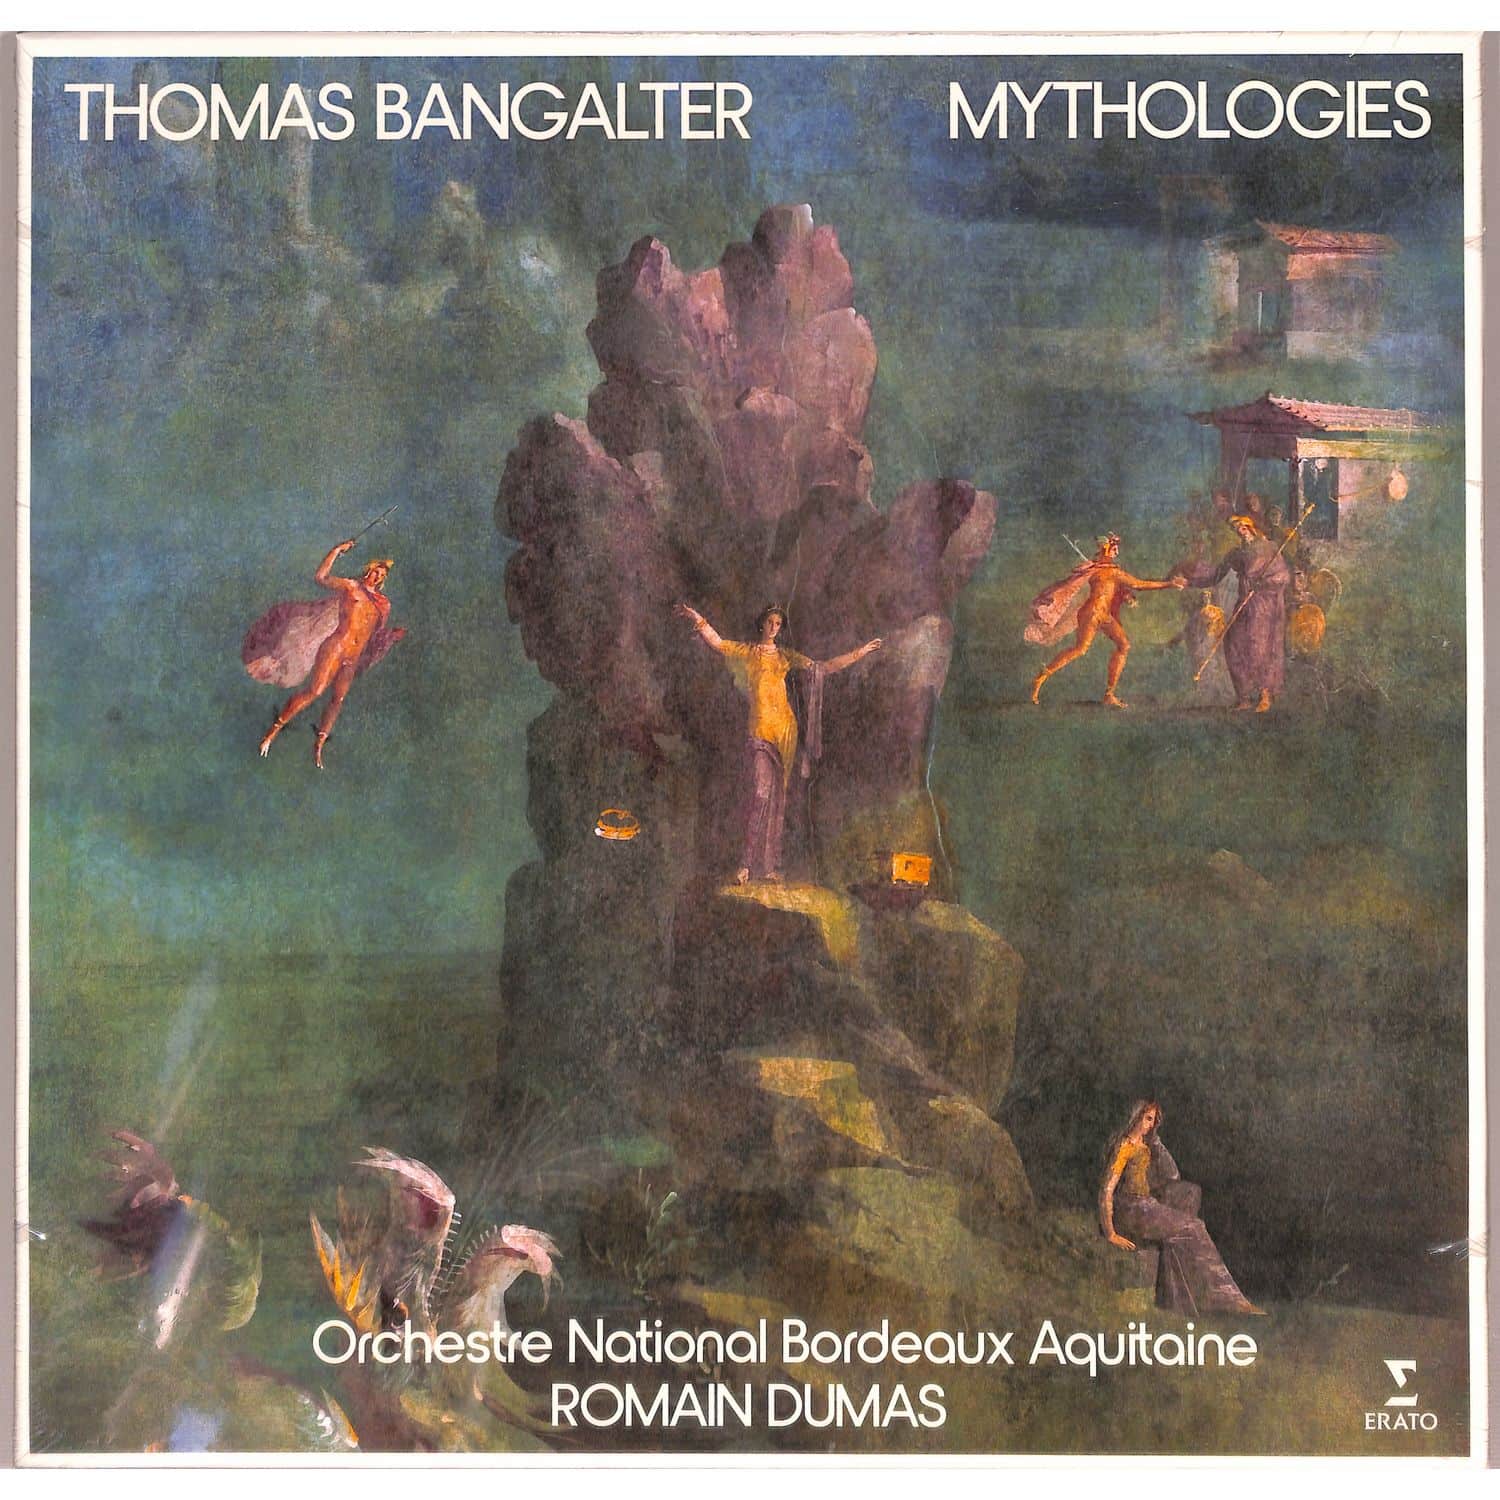 Thomas Bangalter  / ONBA / Romain Dumas - Mythologies 